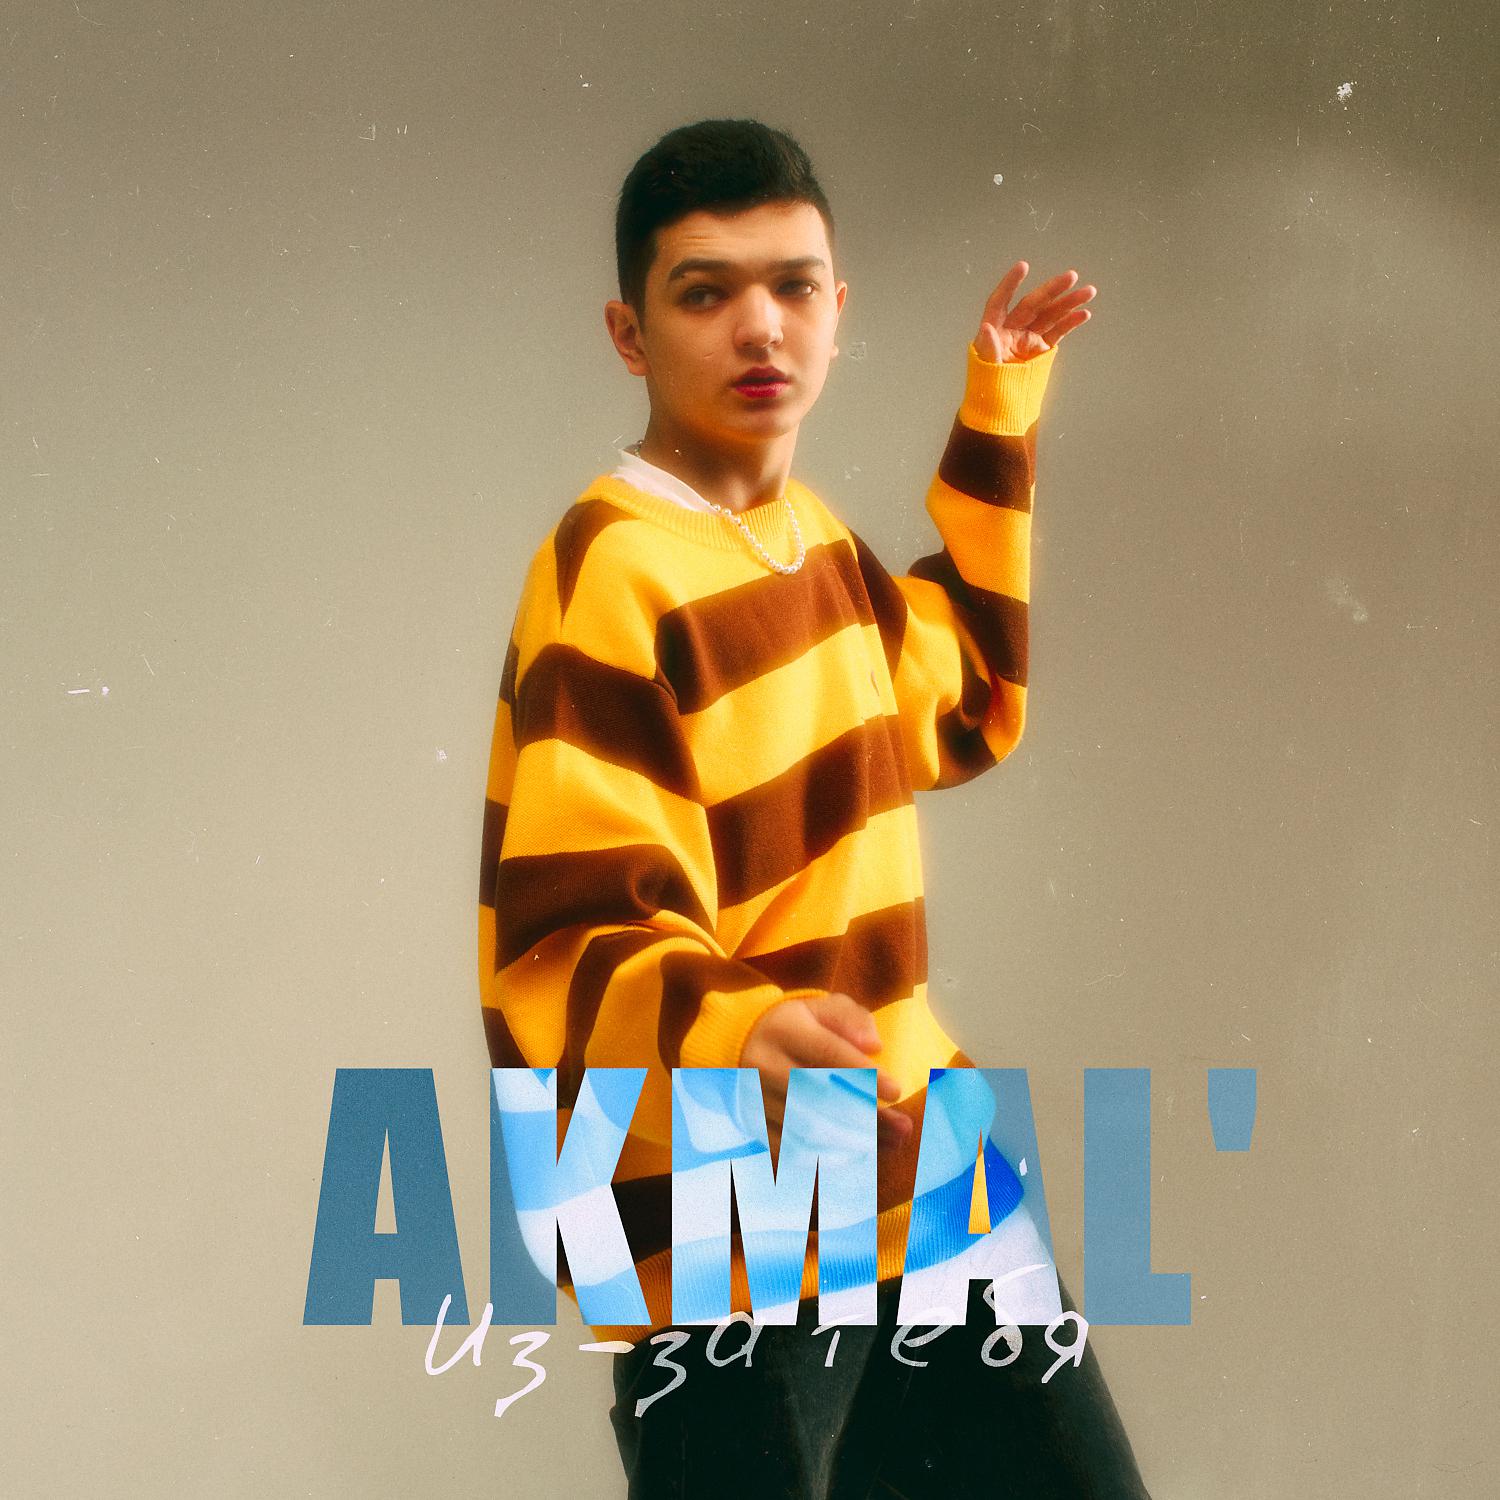 Akmal' - Из-за тебя скачать ремикс 